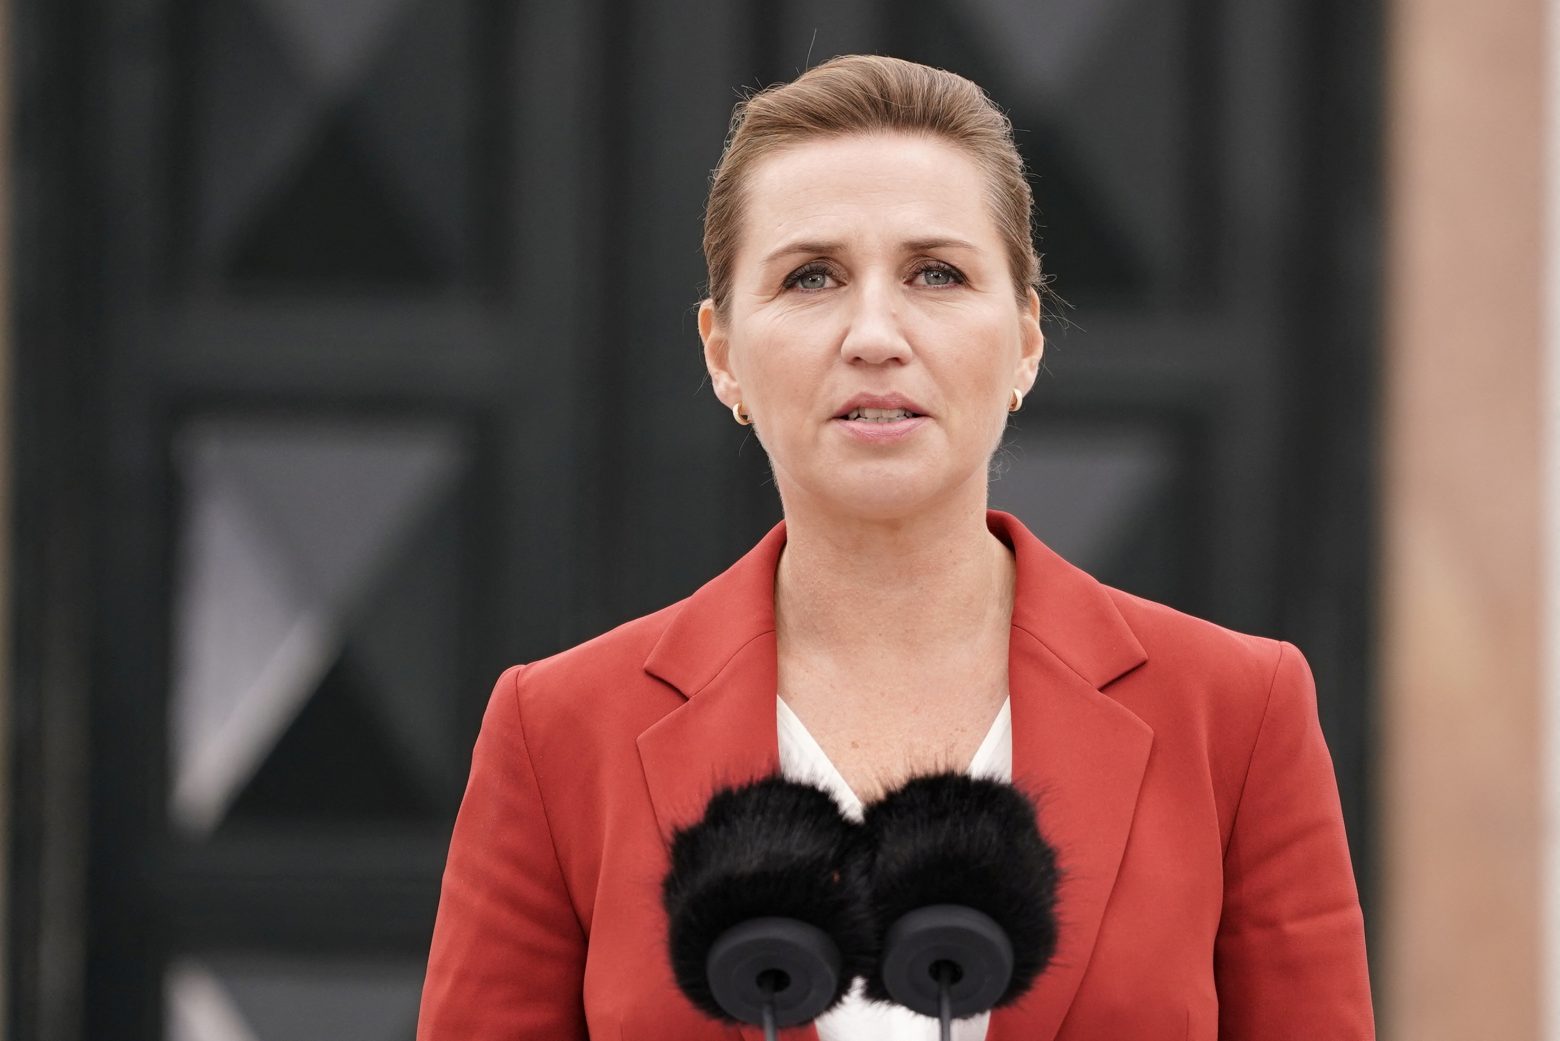 Η πρωθυπουργός της Δανίας δέχεται απειλές στα social media - Έδωσε μηνύματα στη δημοσιότητα